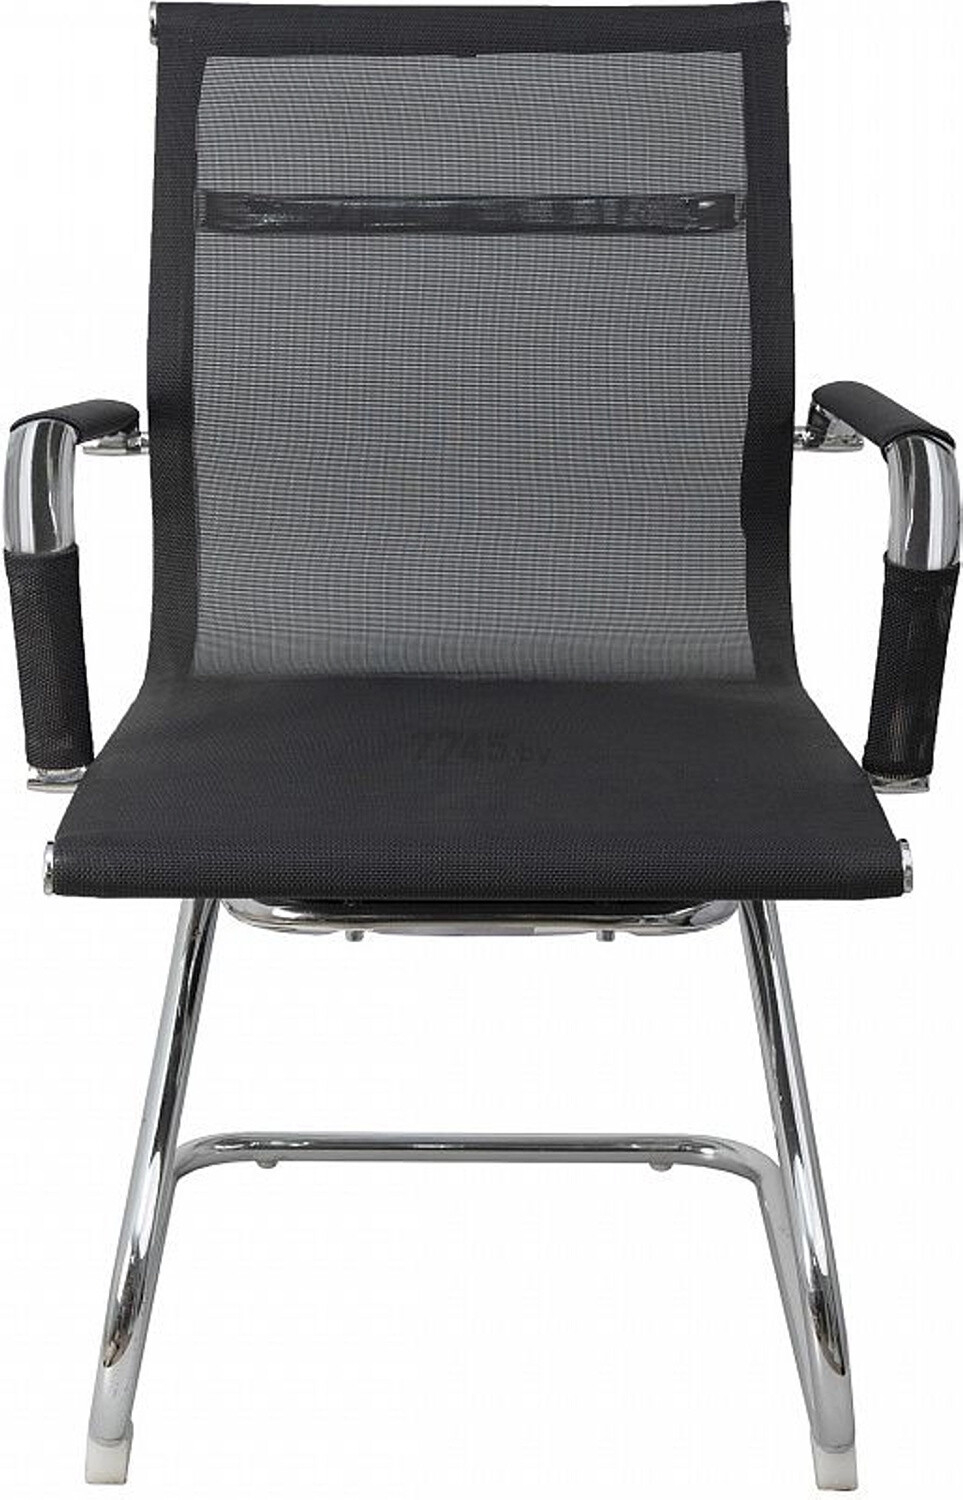 Кресло офисное AKSHOME Aliot New сетка черный (72262) - Фото 2